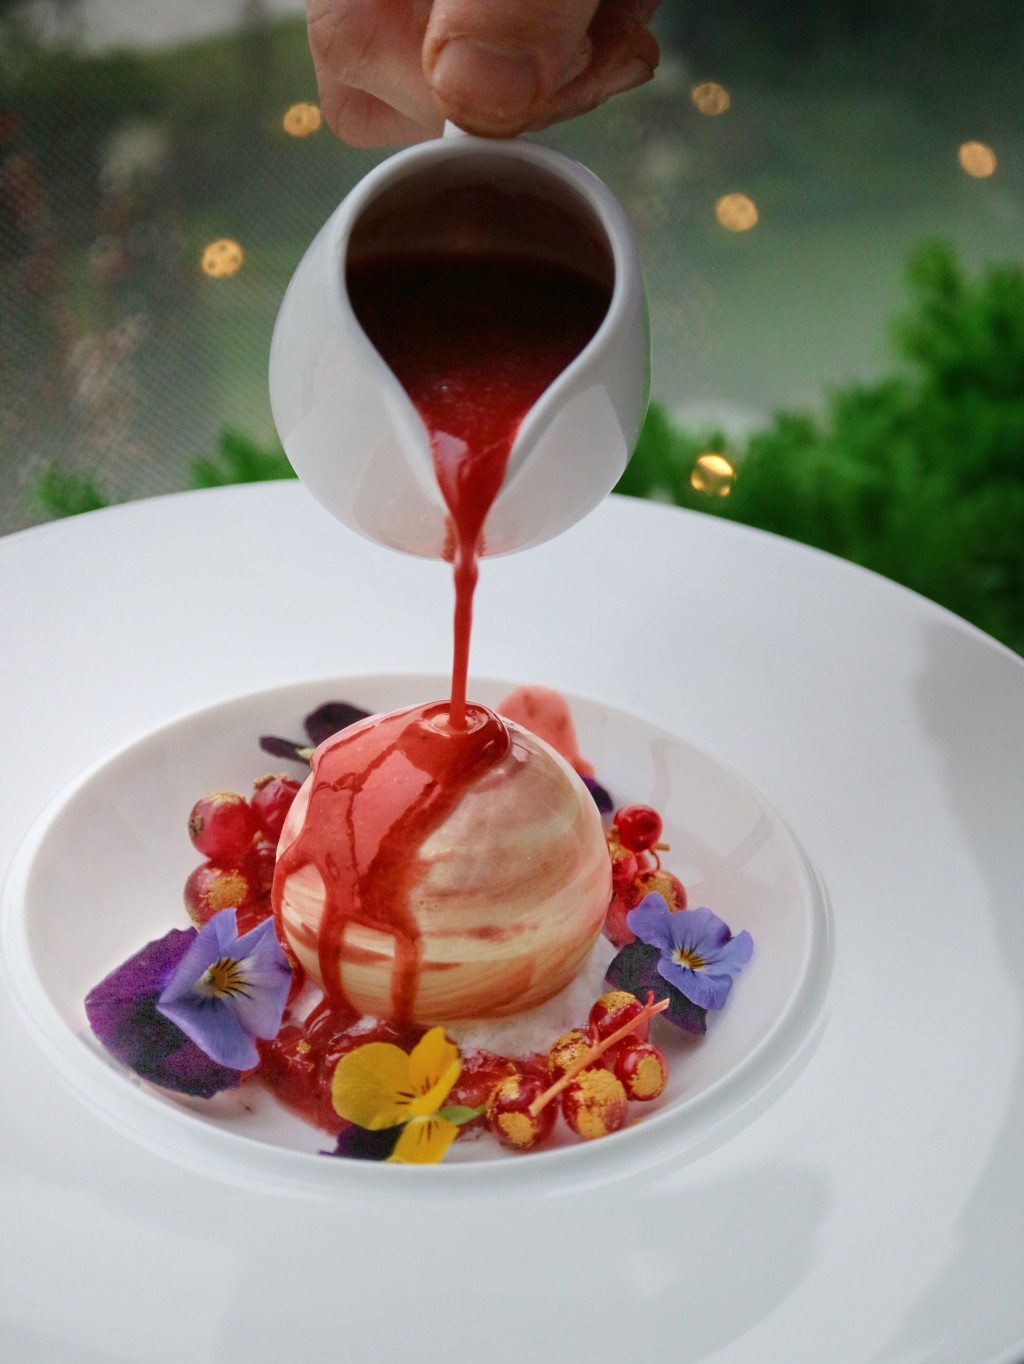 米芝蓮餐廳Briketenia於情人節推出多款精緻甜品。